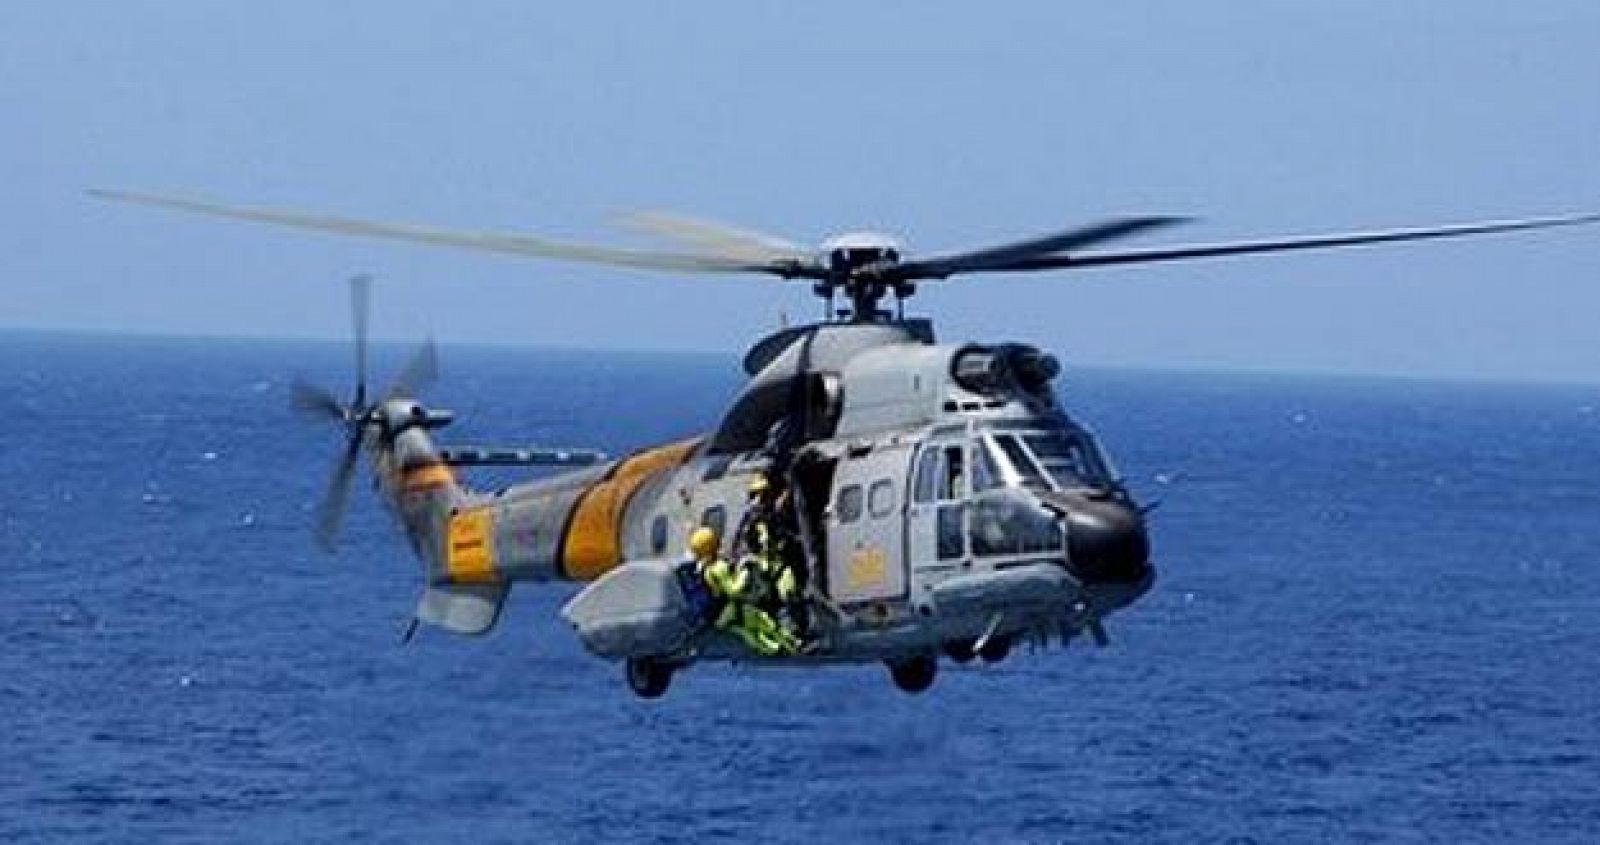 Fotografía de archivo de un helicóptero Super-Puma igual al accidentado en Canarias.